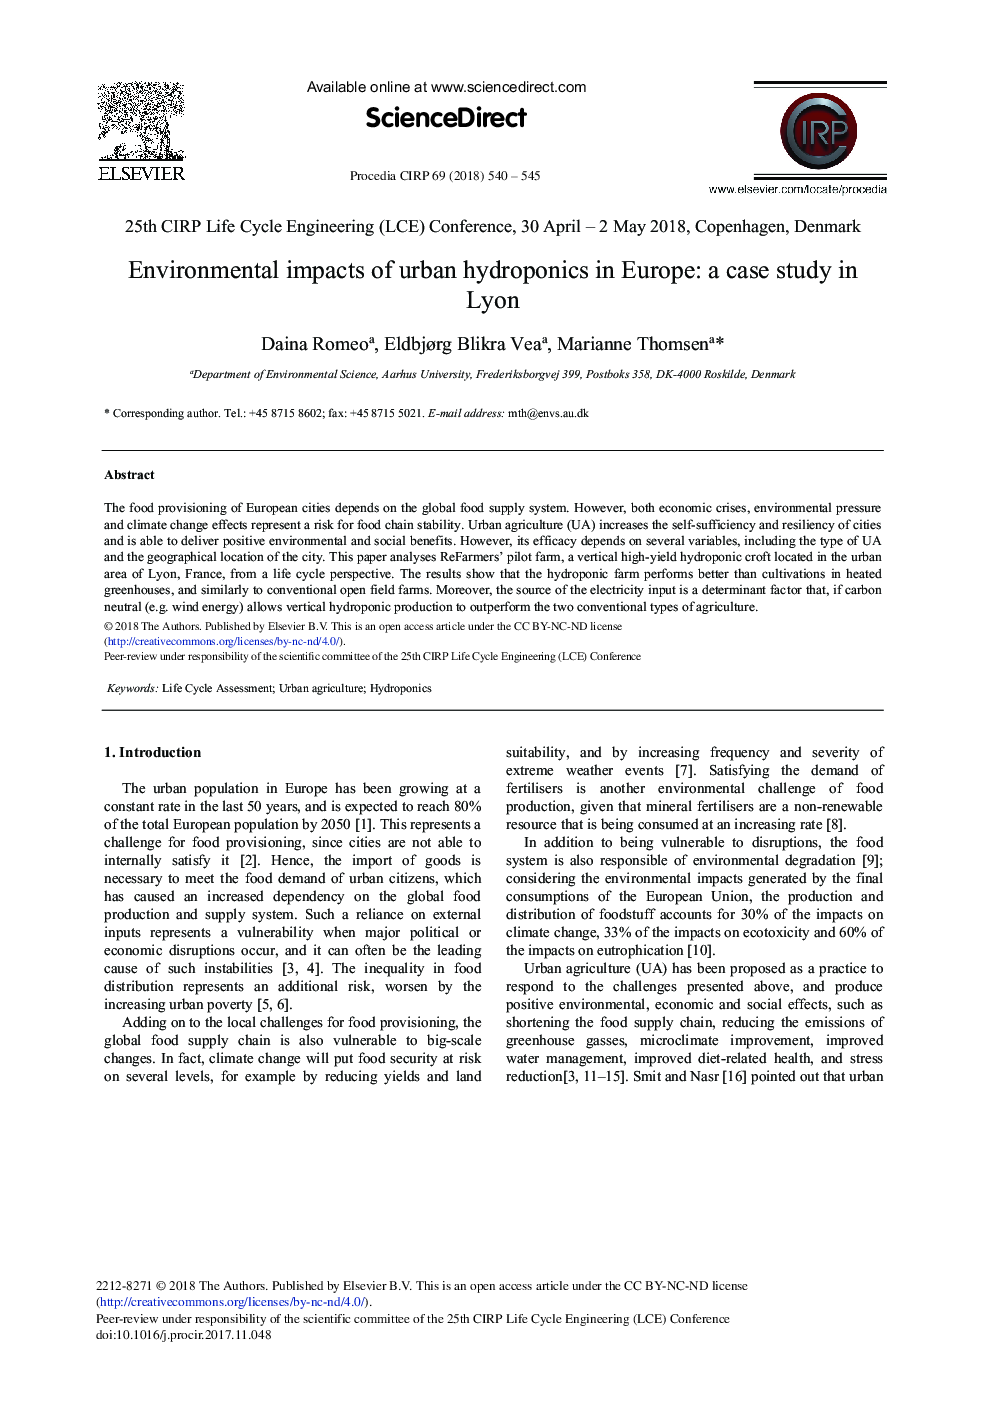 تاثیرات محیطی هیدروپونیک شهری در اروپا: مطالعه موردی در لیون 